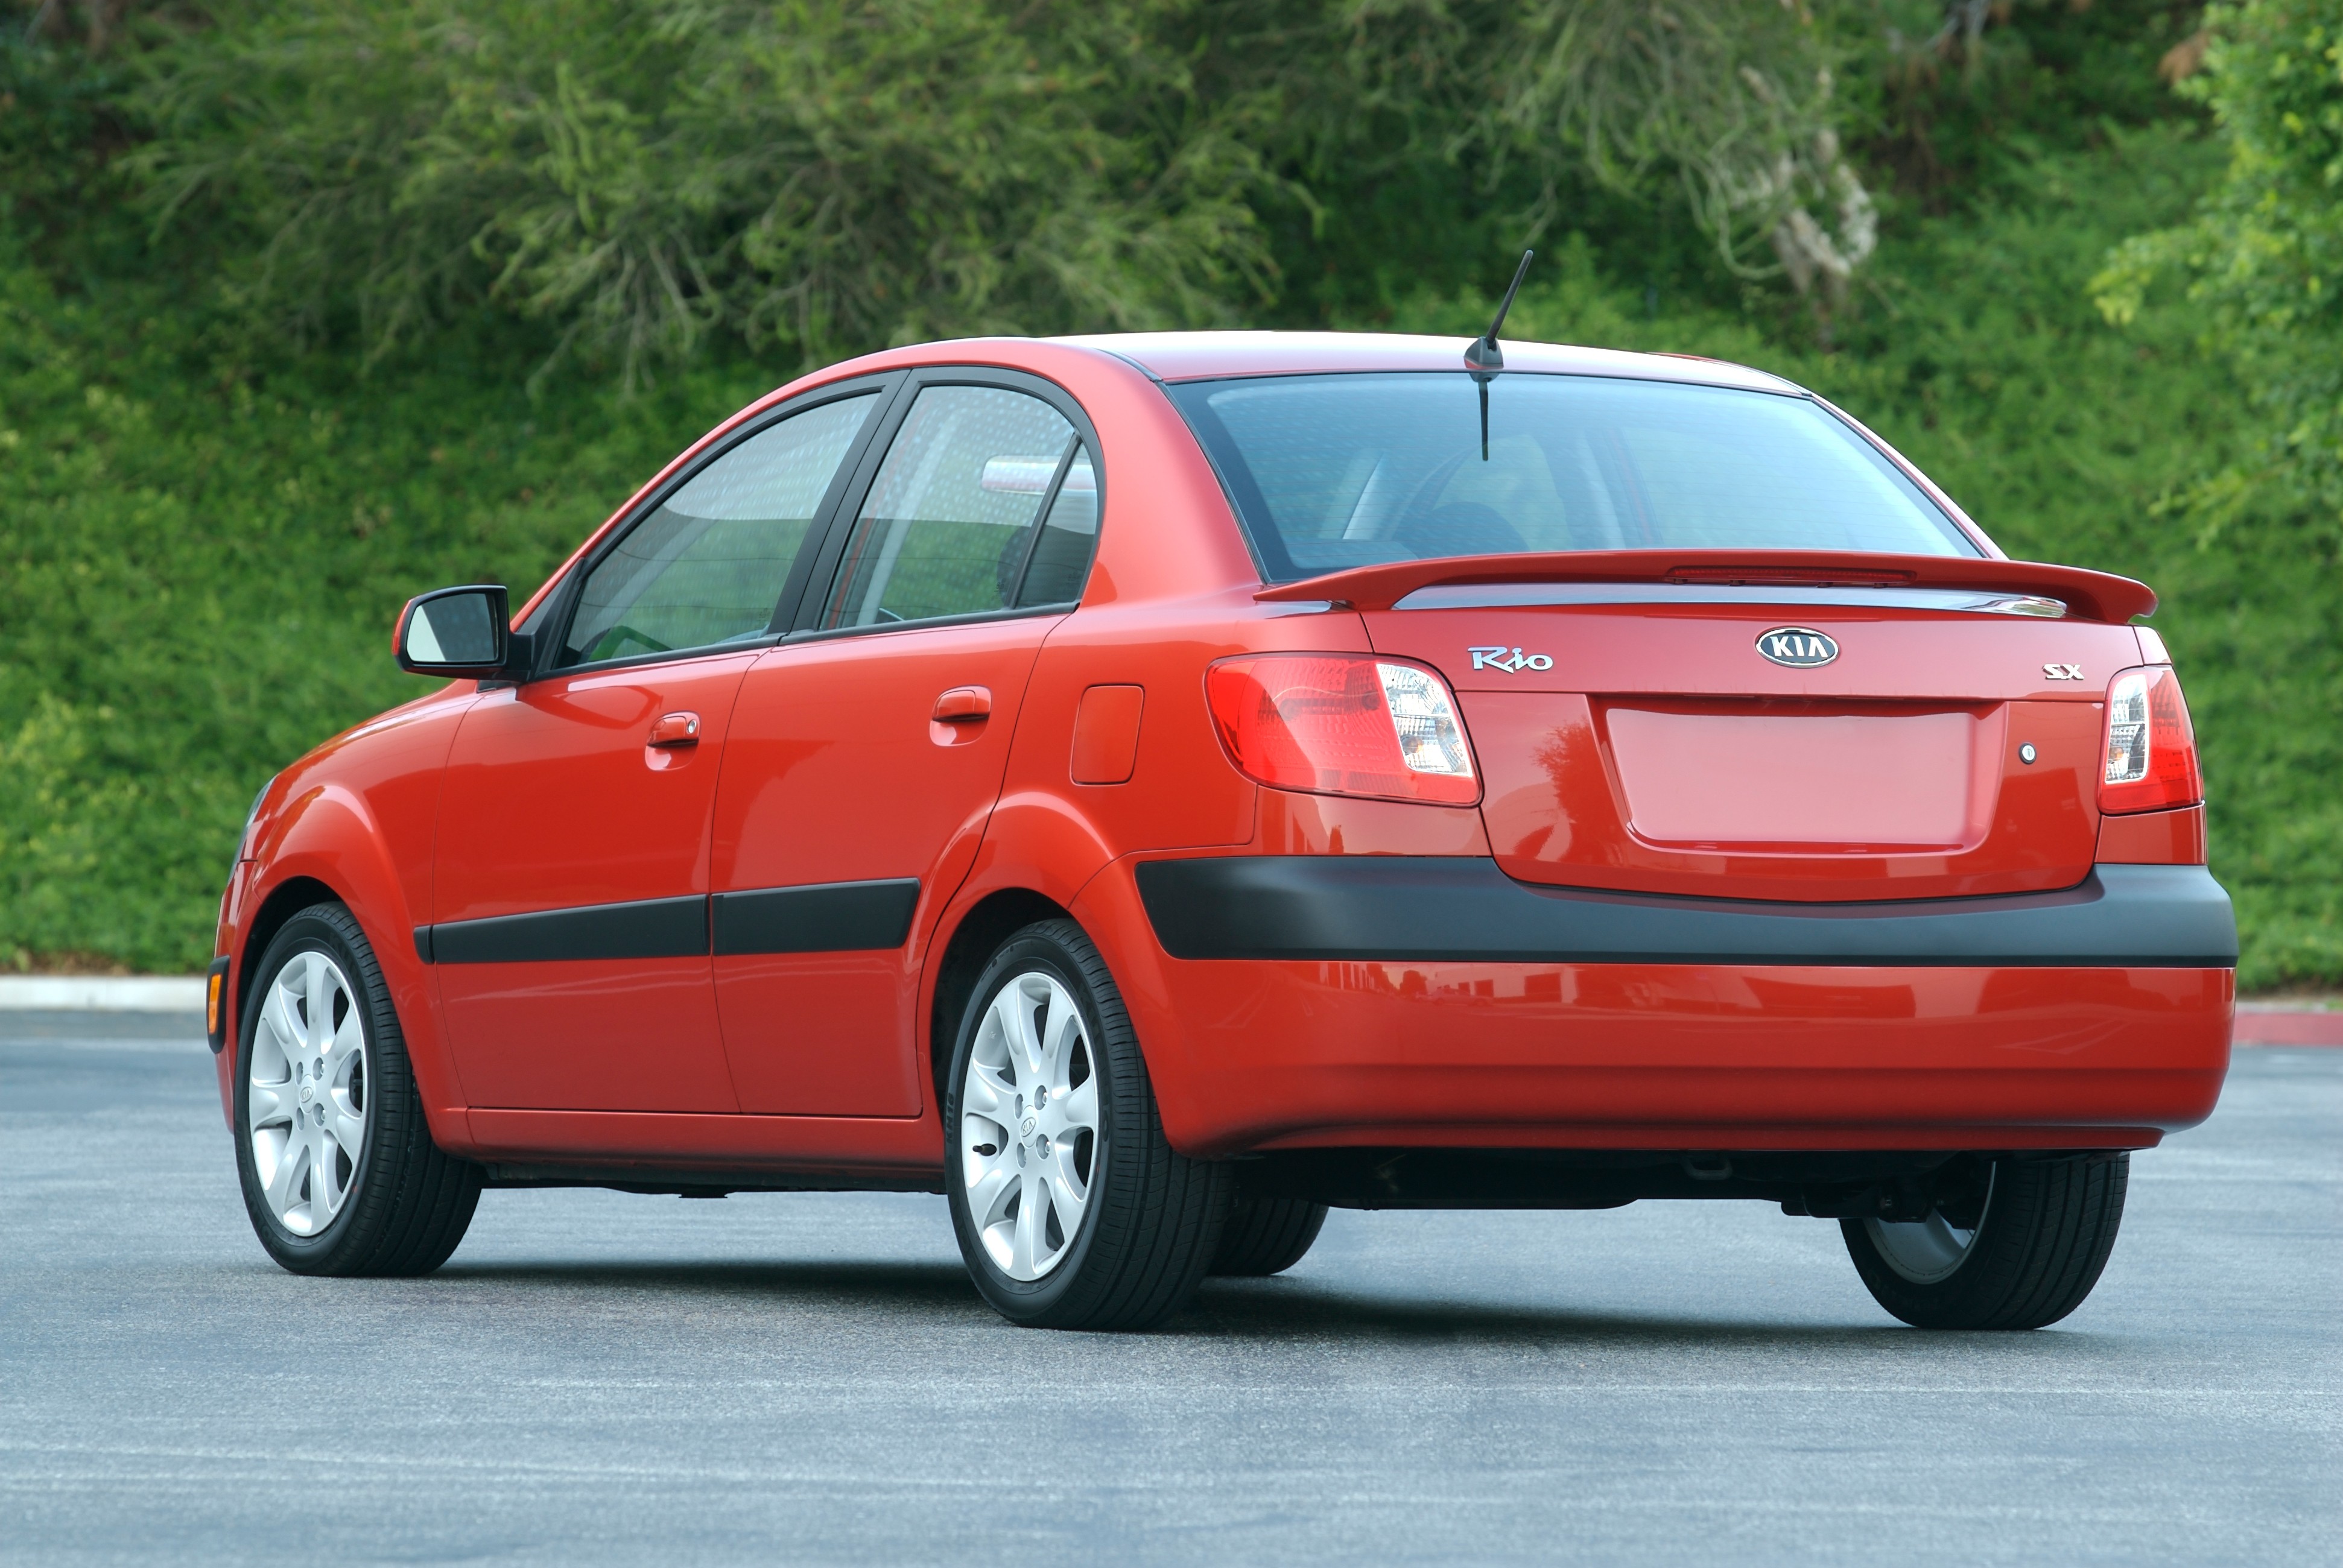 KIA Rio Sedan (2009, 2010, 2011) - photos, specs & model history